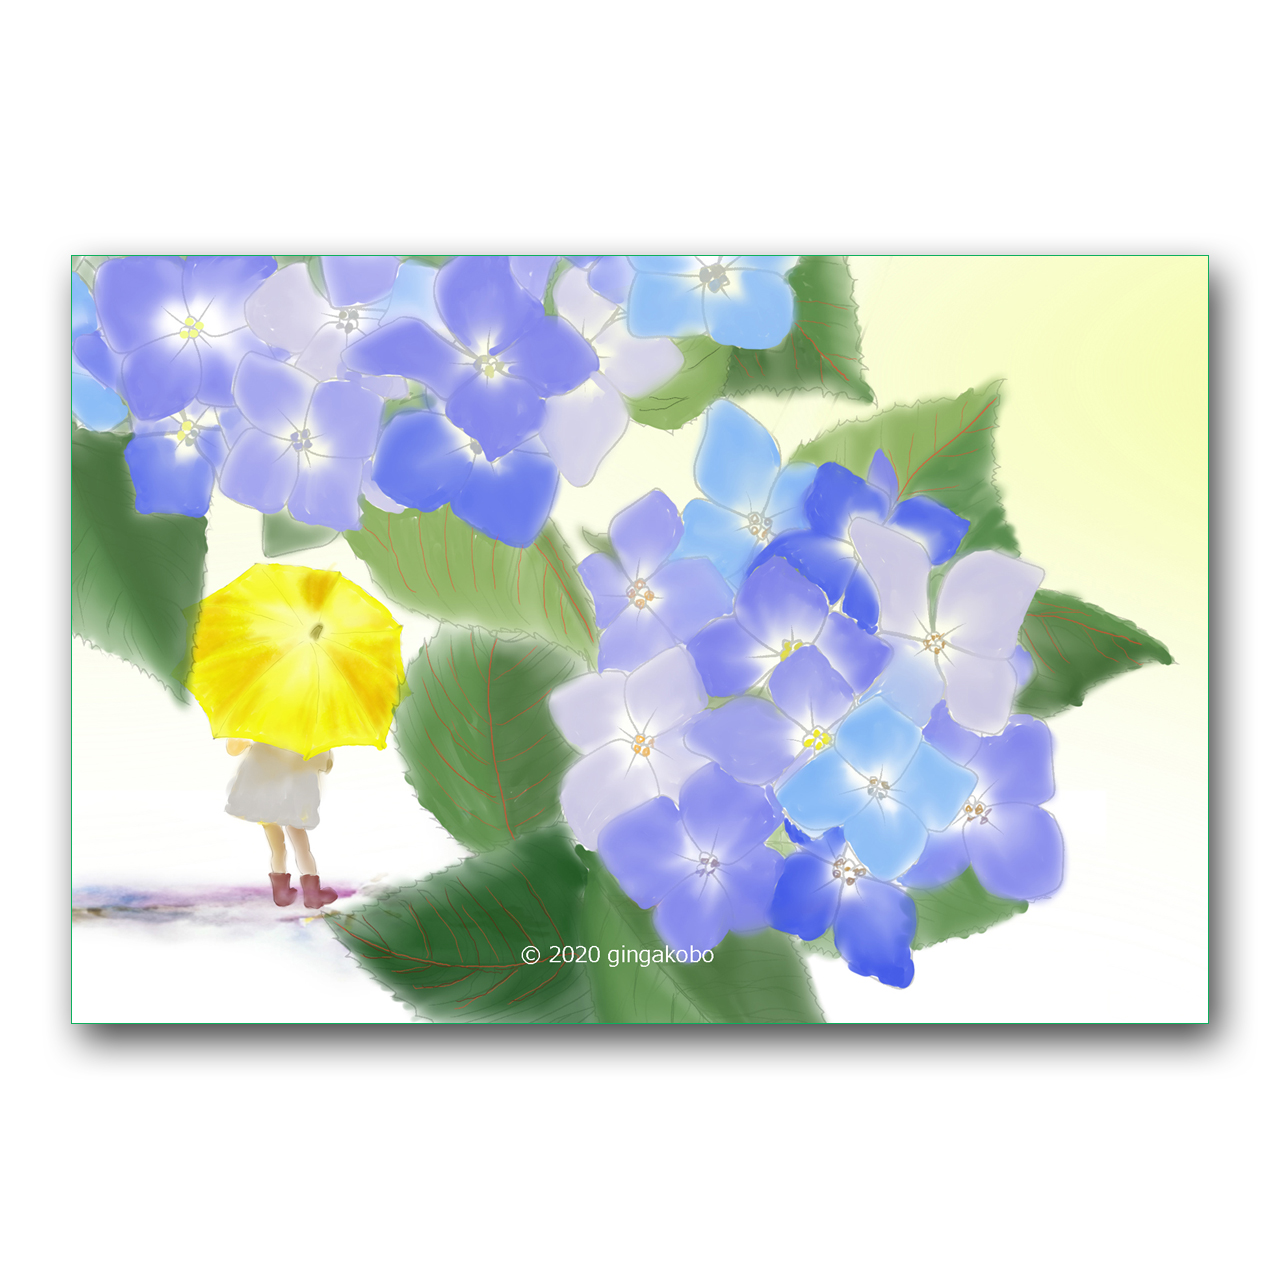 黄色い傘とアジサイ ほっこり癒しのイラストポストカード2枚組 No 10 Iichi ハンドメイド クラフト作品 手仕事品の通販